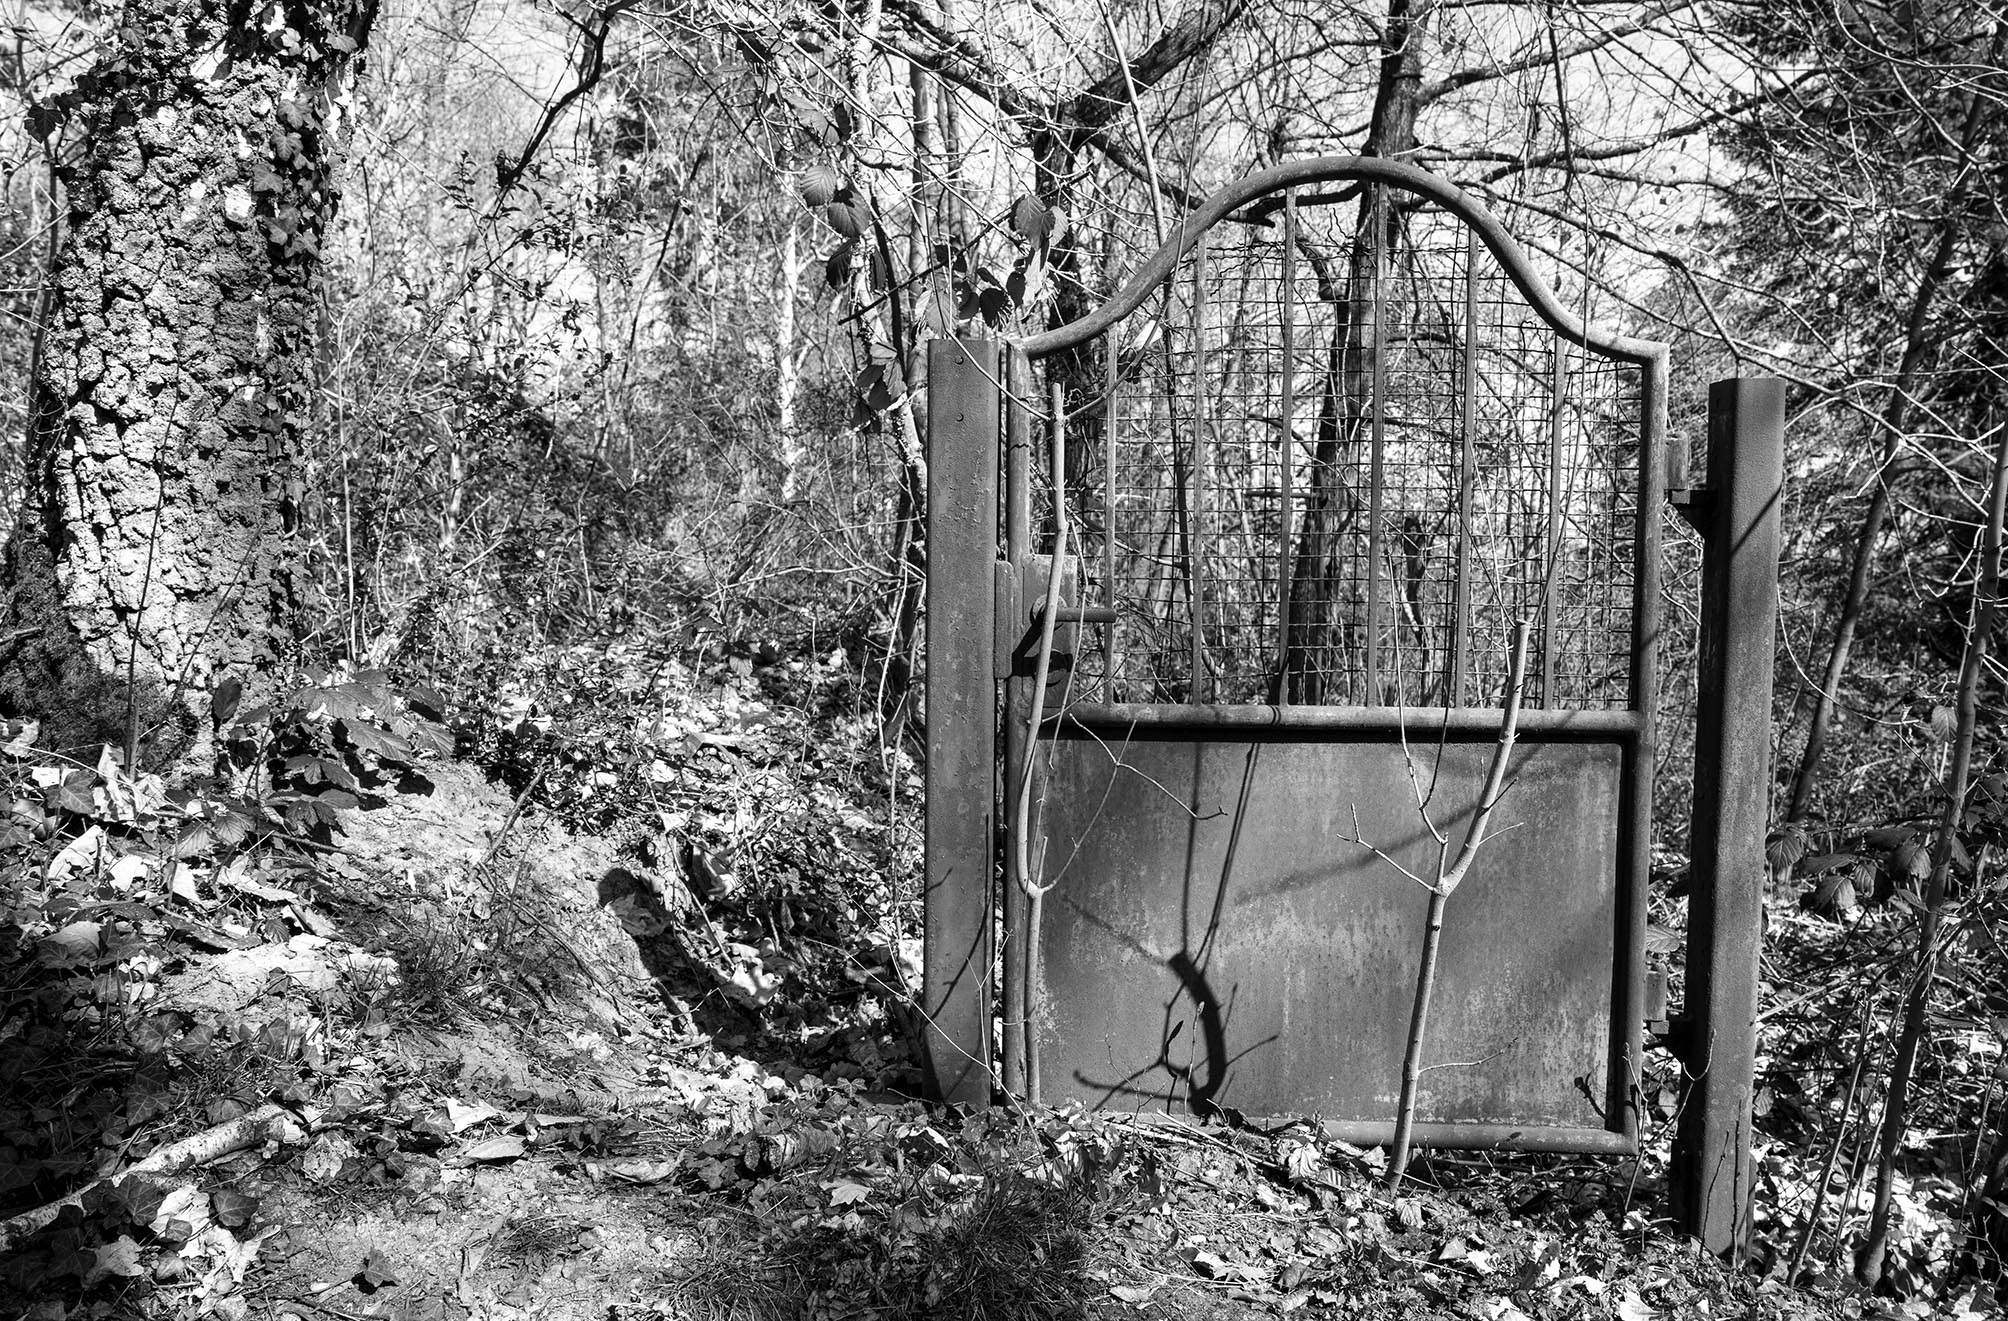 Scharz-Weiß-Foto von einem allein stehenden Metalltor im Wald